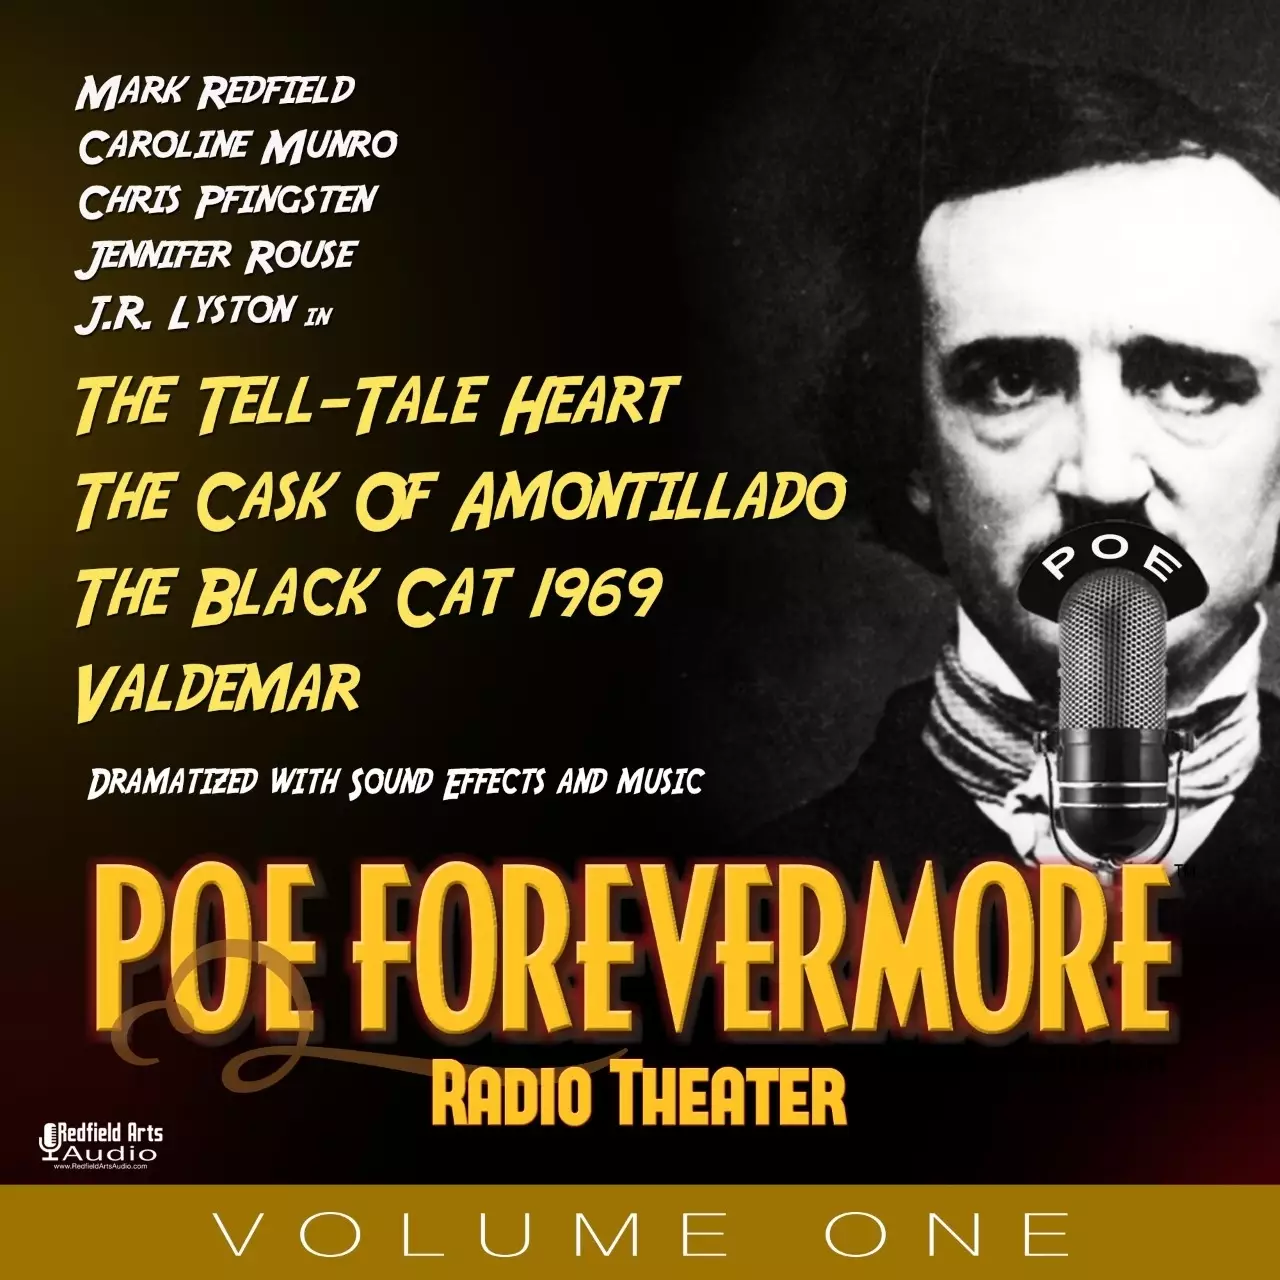 PoeForevermore Radio Theater Volume One